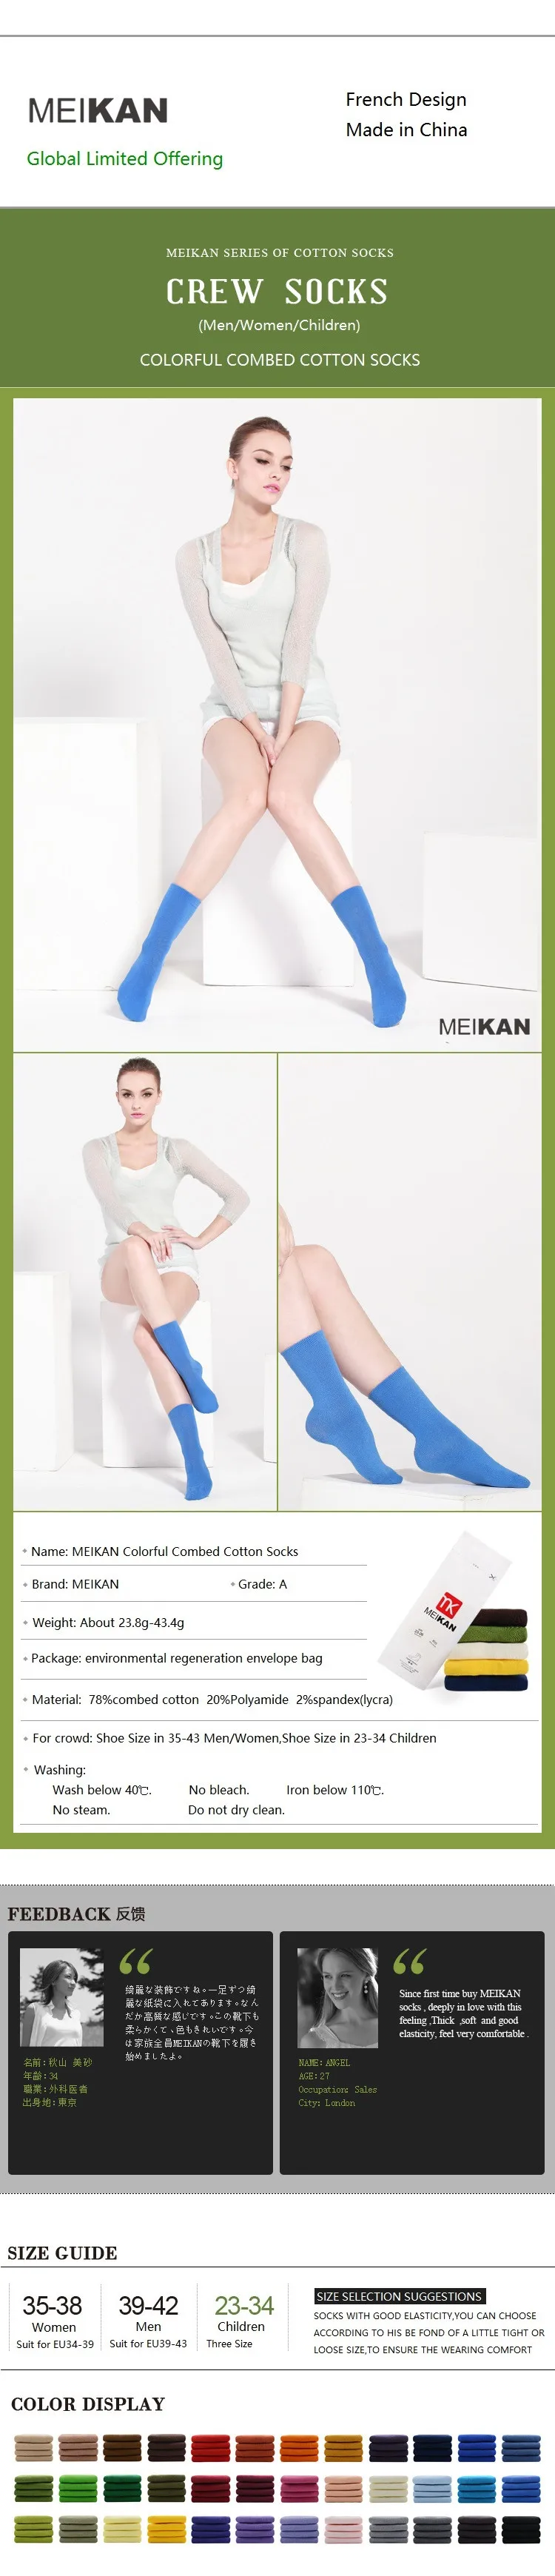 MK1226part2 бренд meikan Разноцветные носки унисекс из чесаного хлопка повседневные носки до середины икры для мужчин/женщин/детей, носки высокого качества